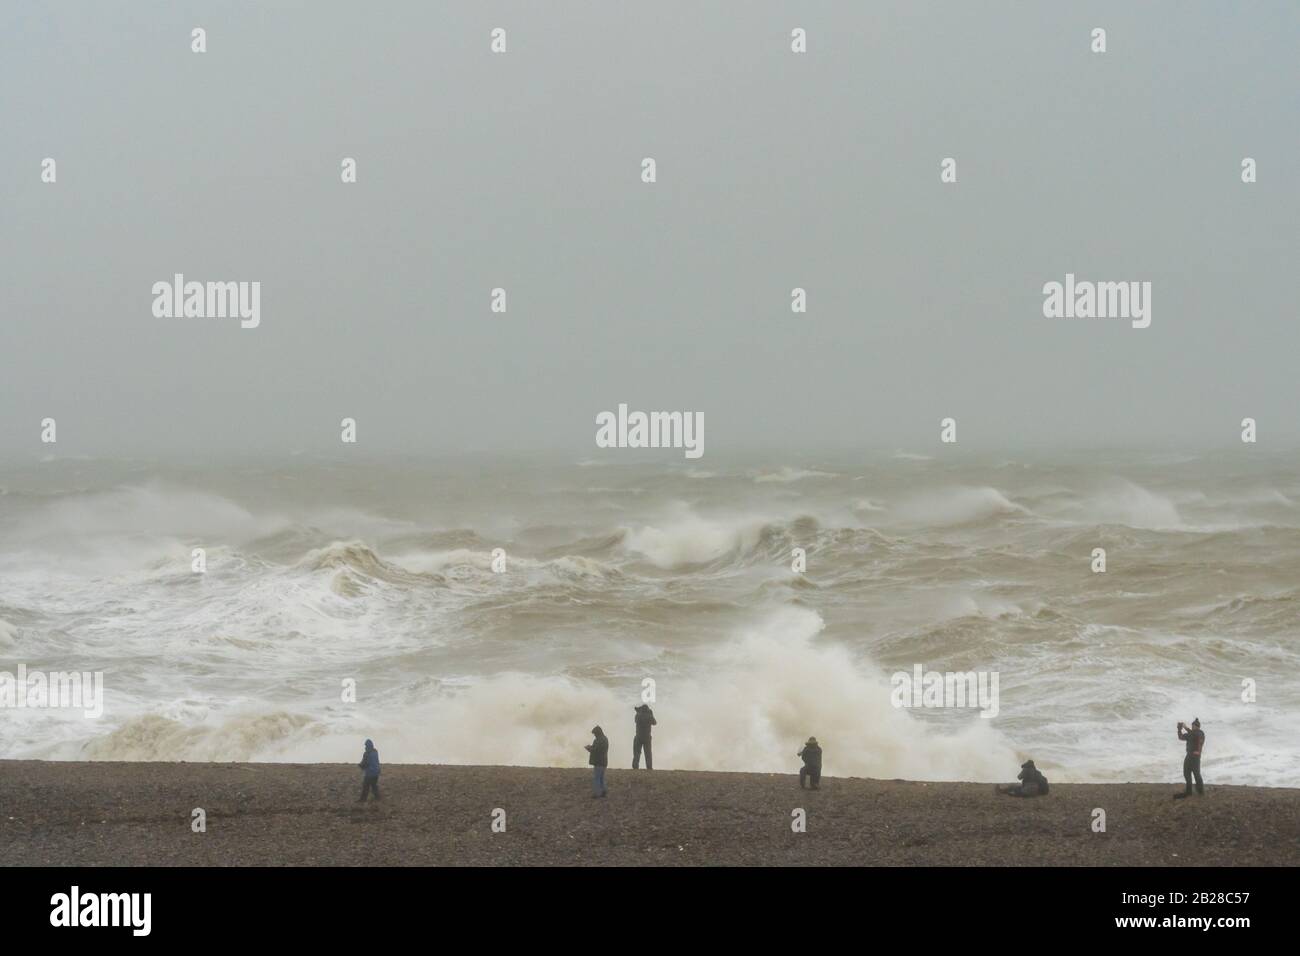 Sehr mutige Fotografen zaulen den Strand von Newhaven, East Sussex, als Storm Ciara am 9. Februar 2020 hohe Winde und starken Regen entfesselt. Stockfoto